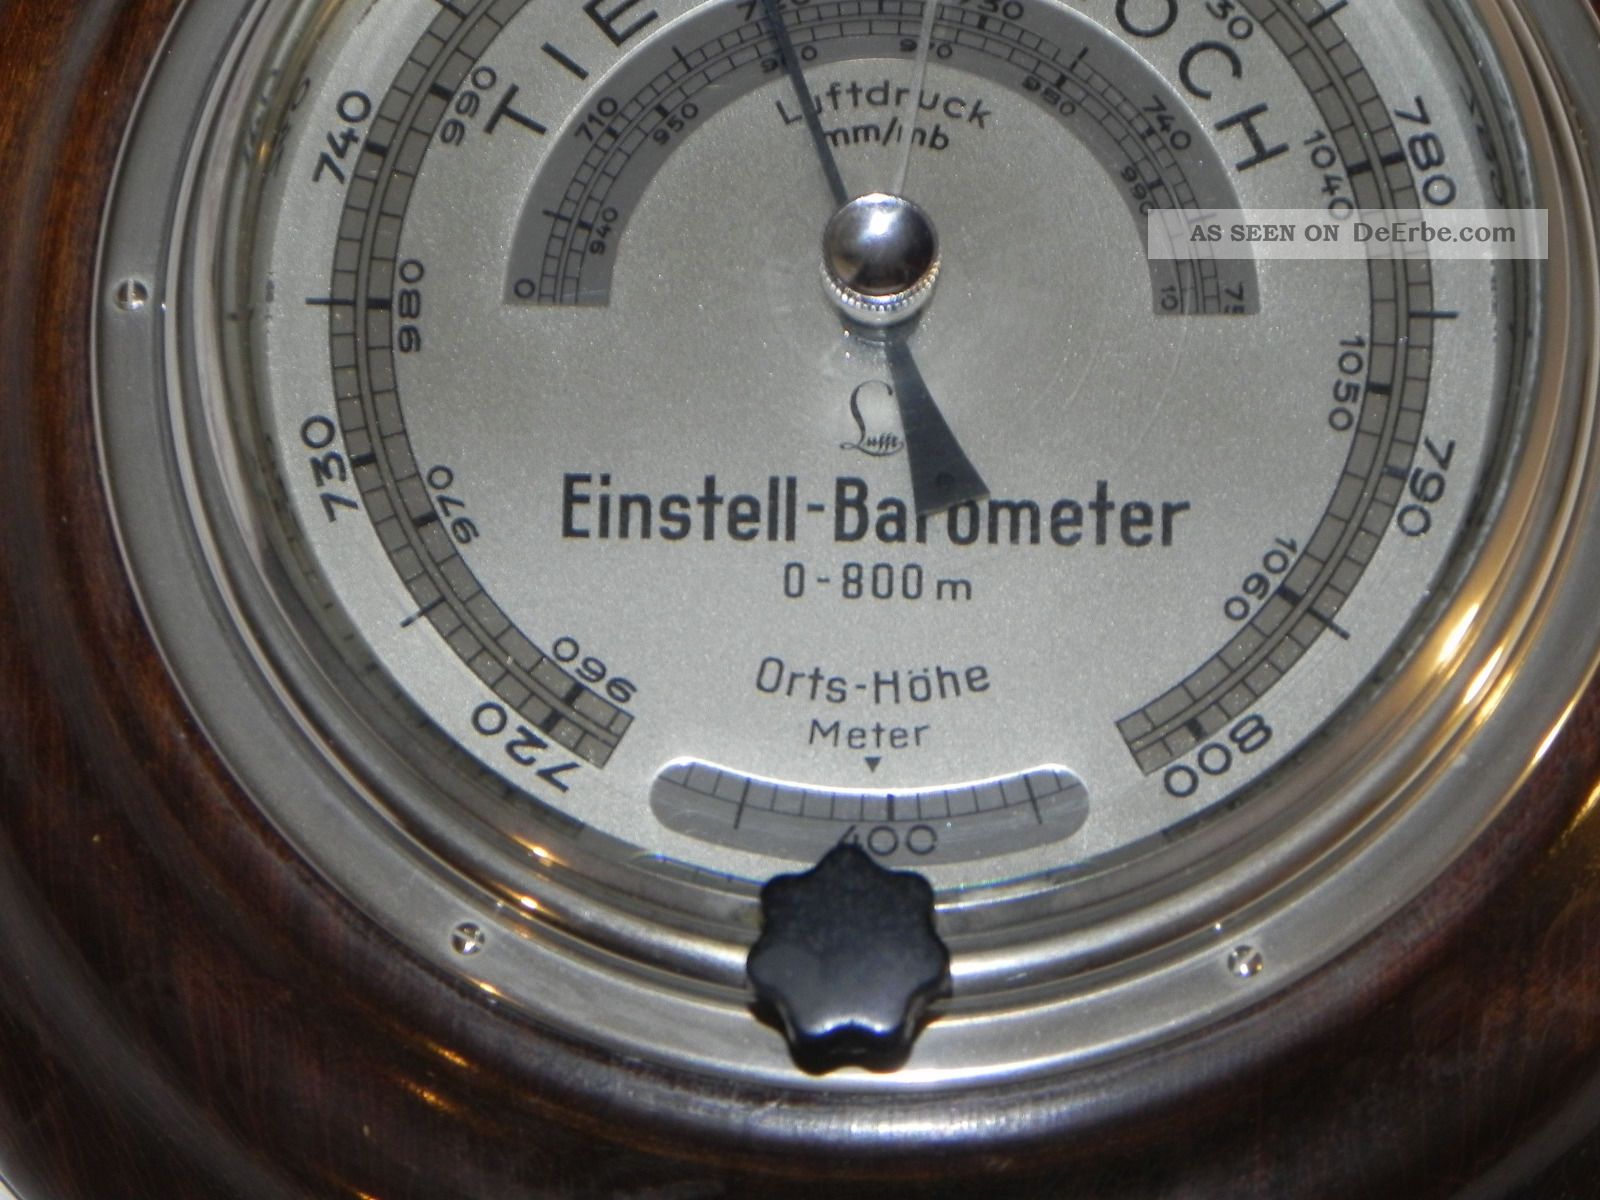 Barometer - Lufft Einstellbarometer - Selten Wettergeräte Bild